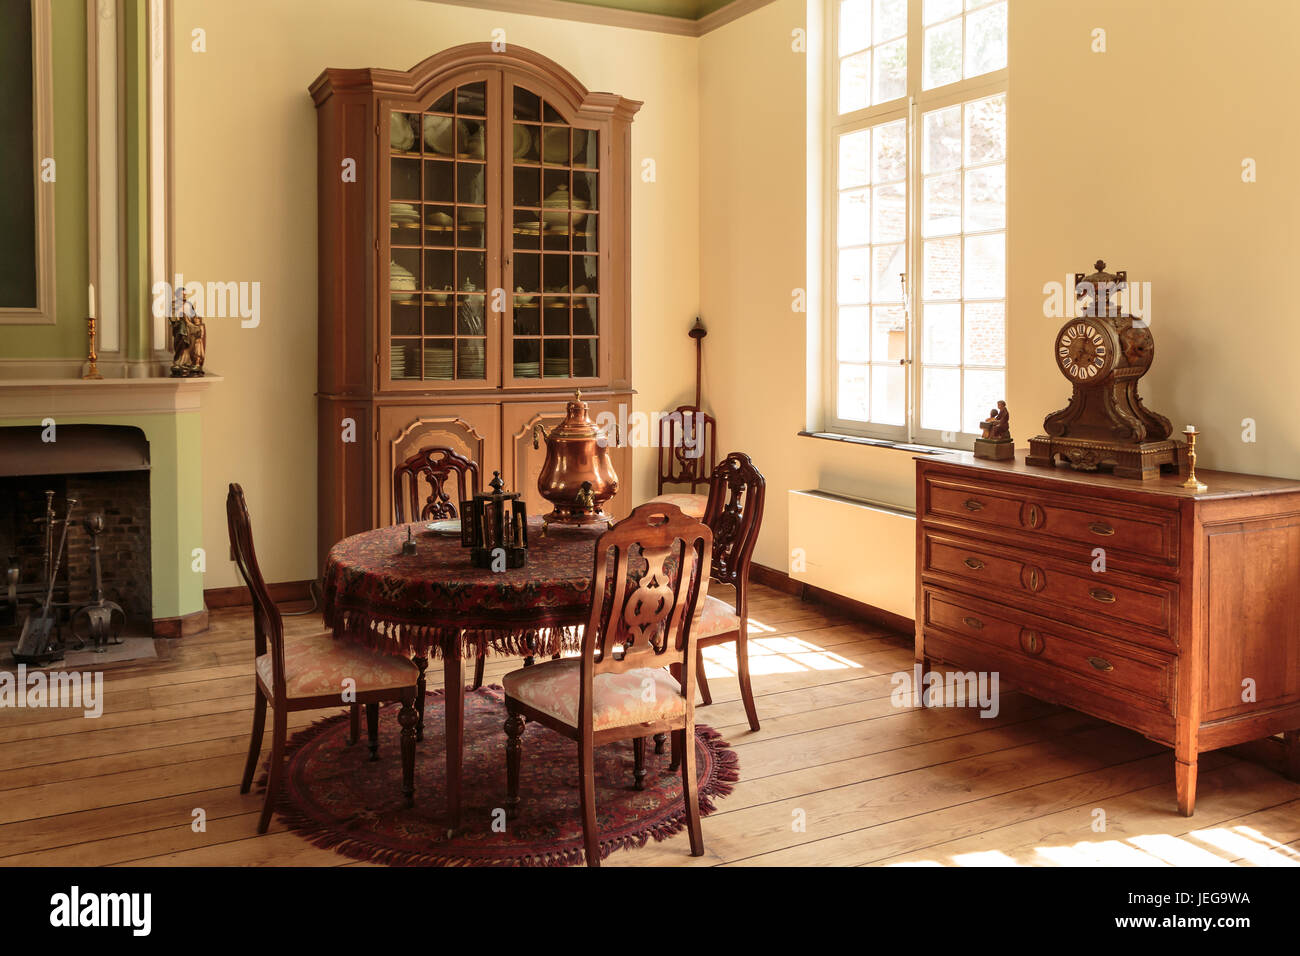 Old fashioned intérieur avec table, chaises, armoire murale en bois et de l'horloge. Historical Museum Bokrijk, Genk, Flandre orientale, Belgique Banque D'Images